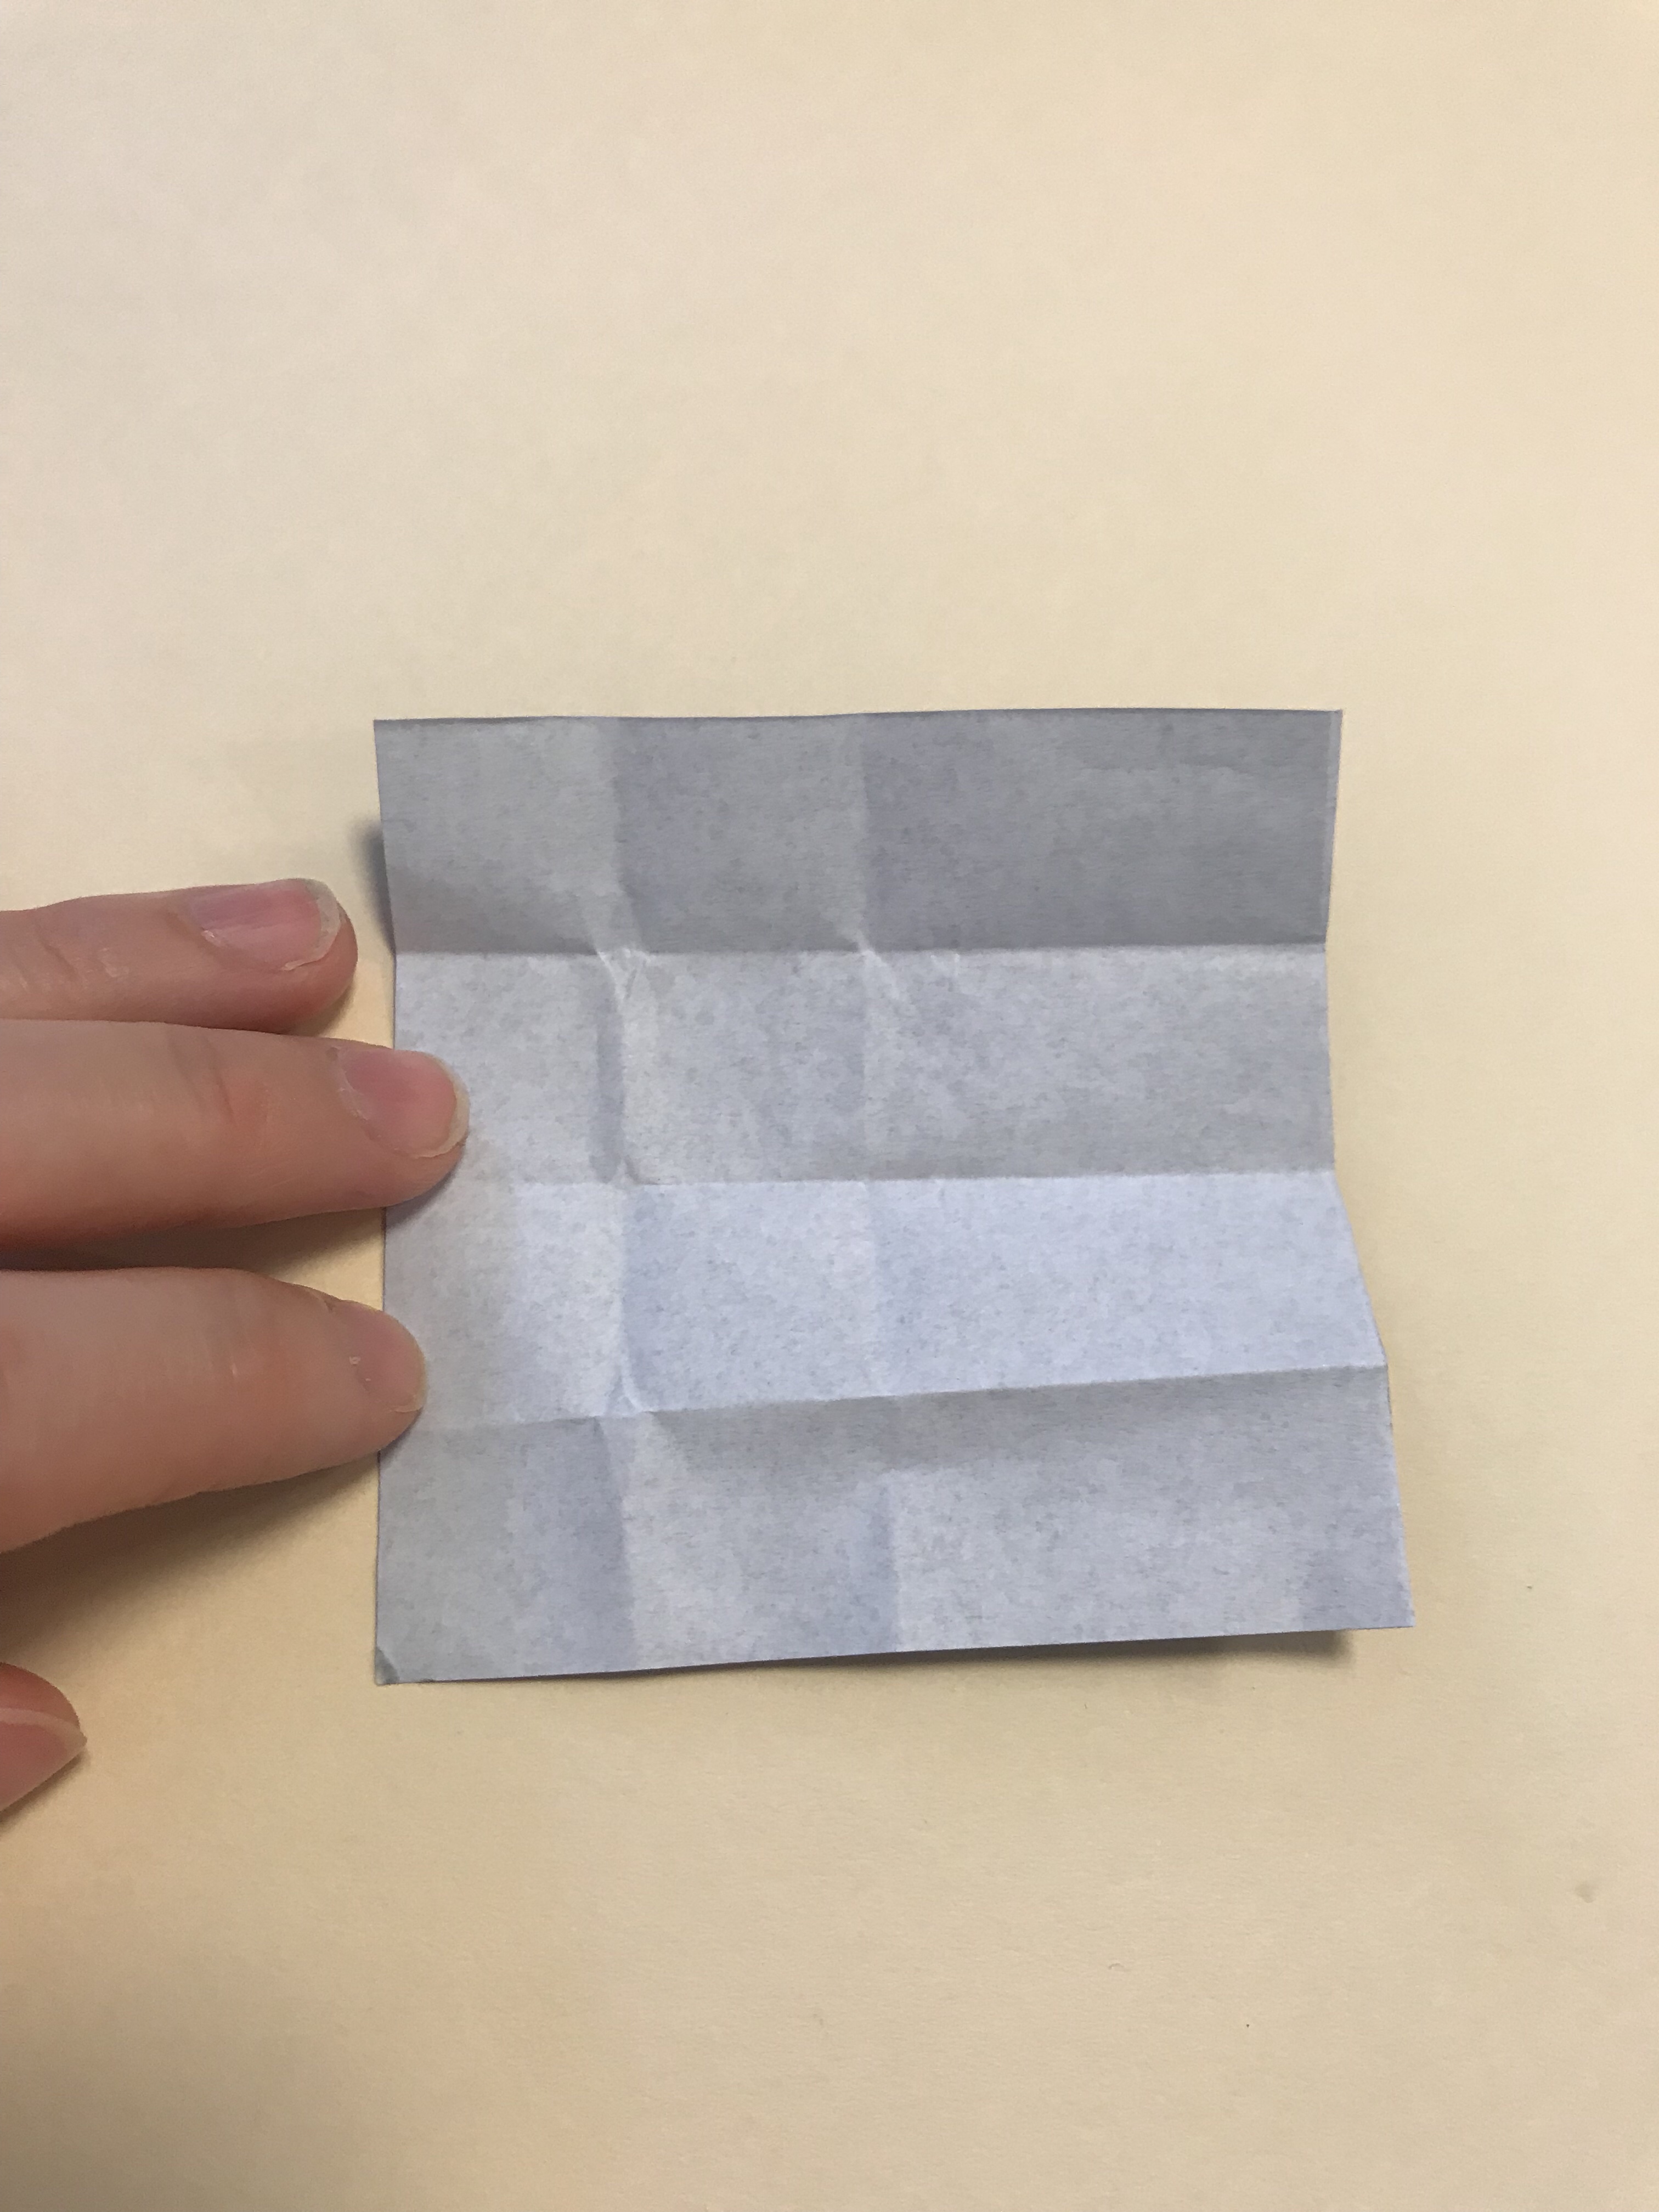 折り線のついた黒い折り紙。